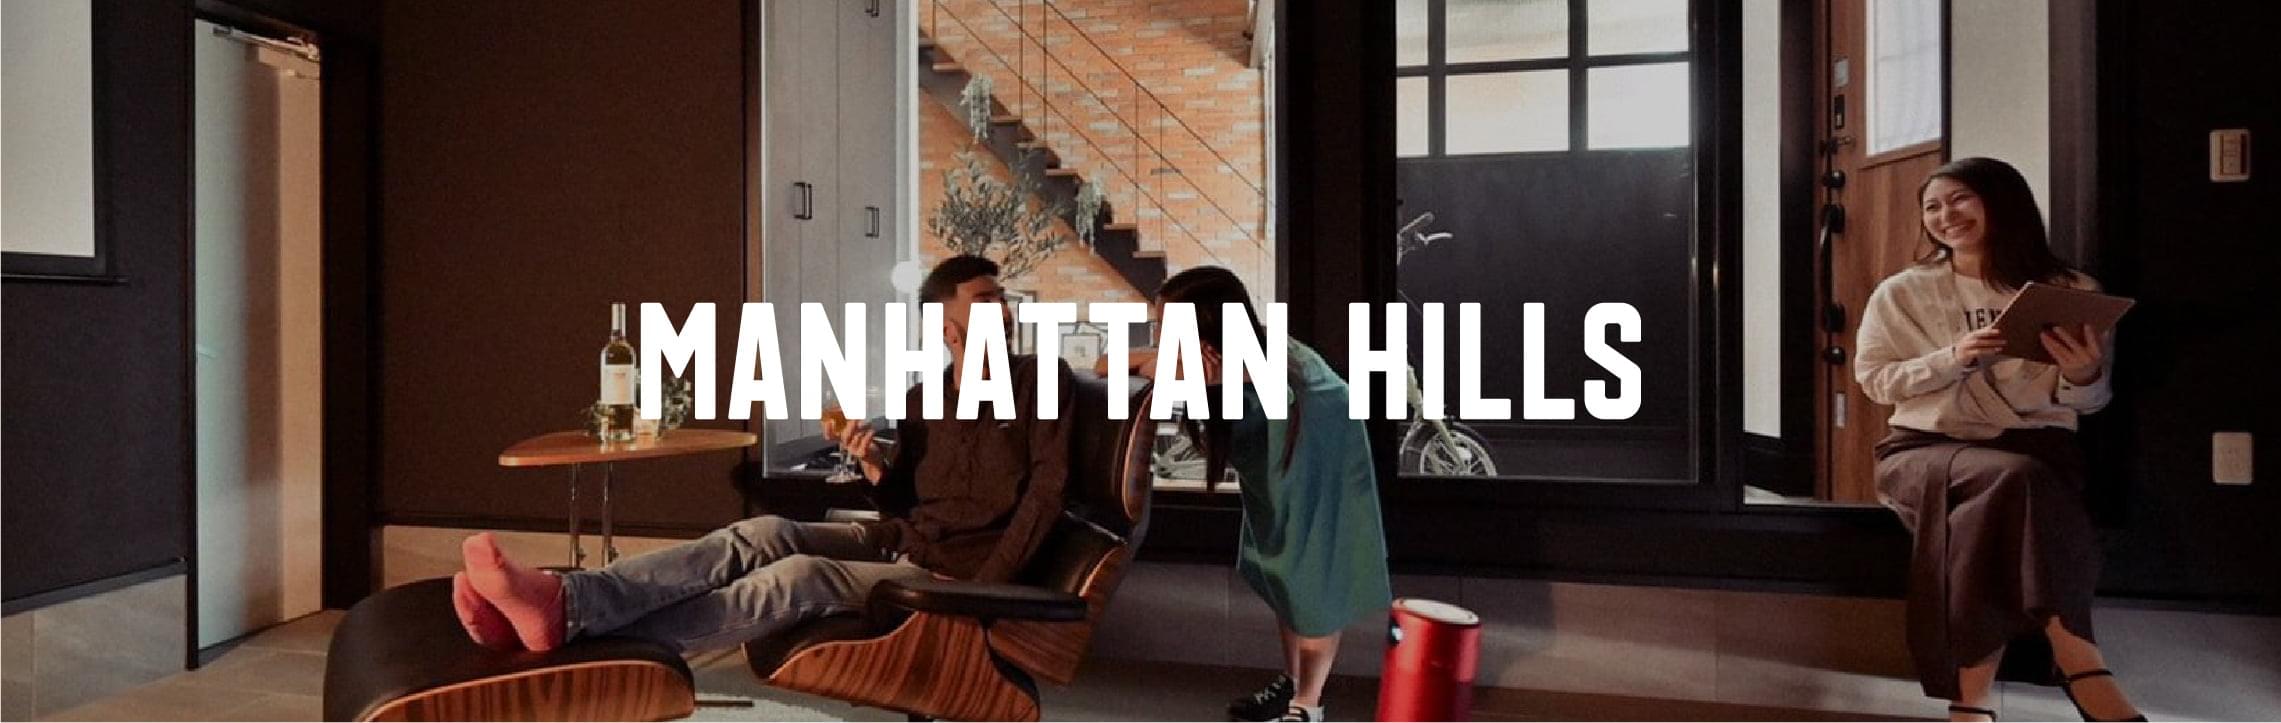 MANHATTAN HILLS